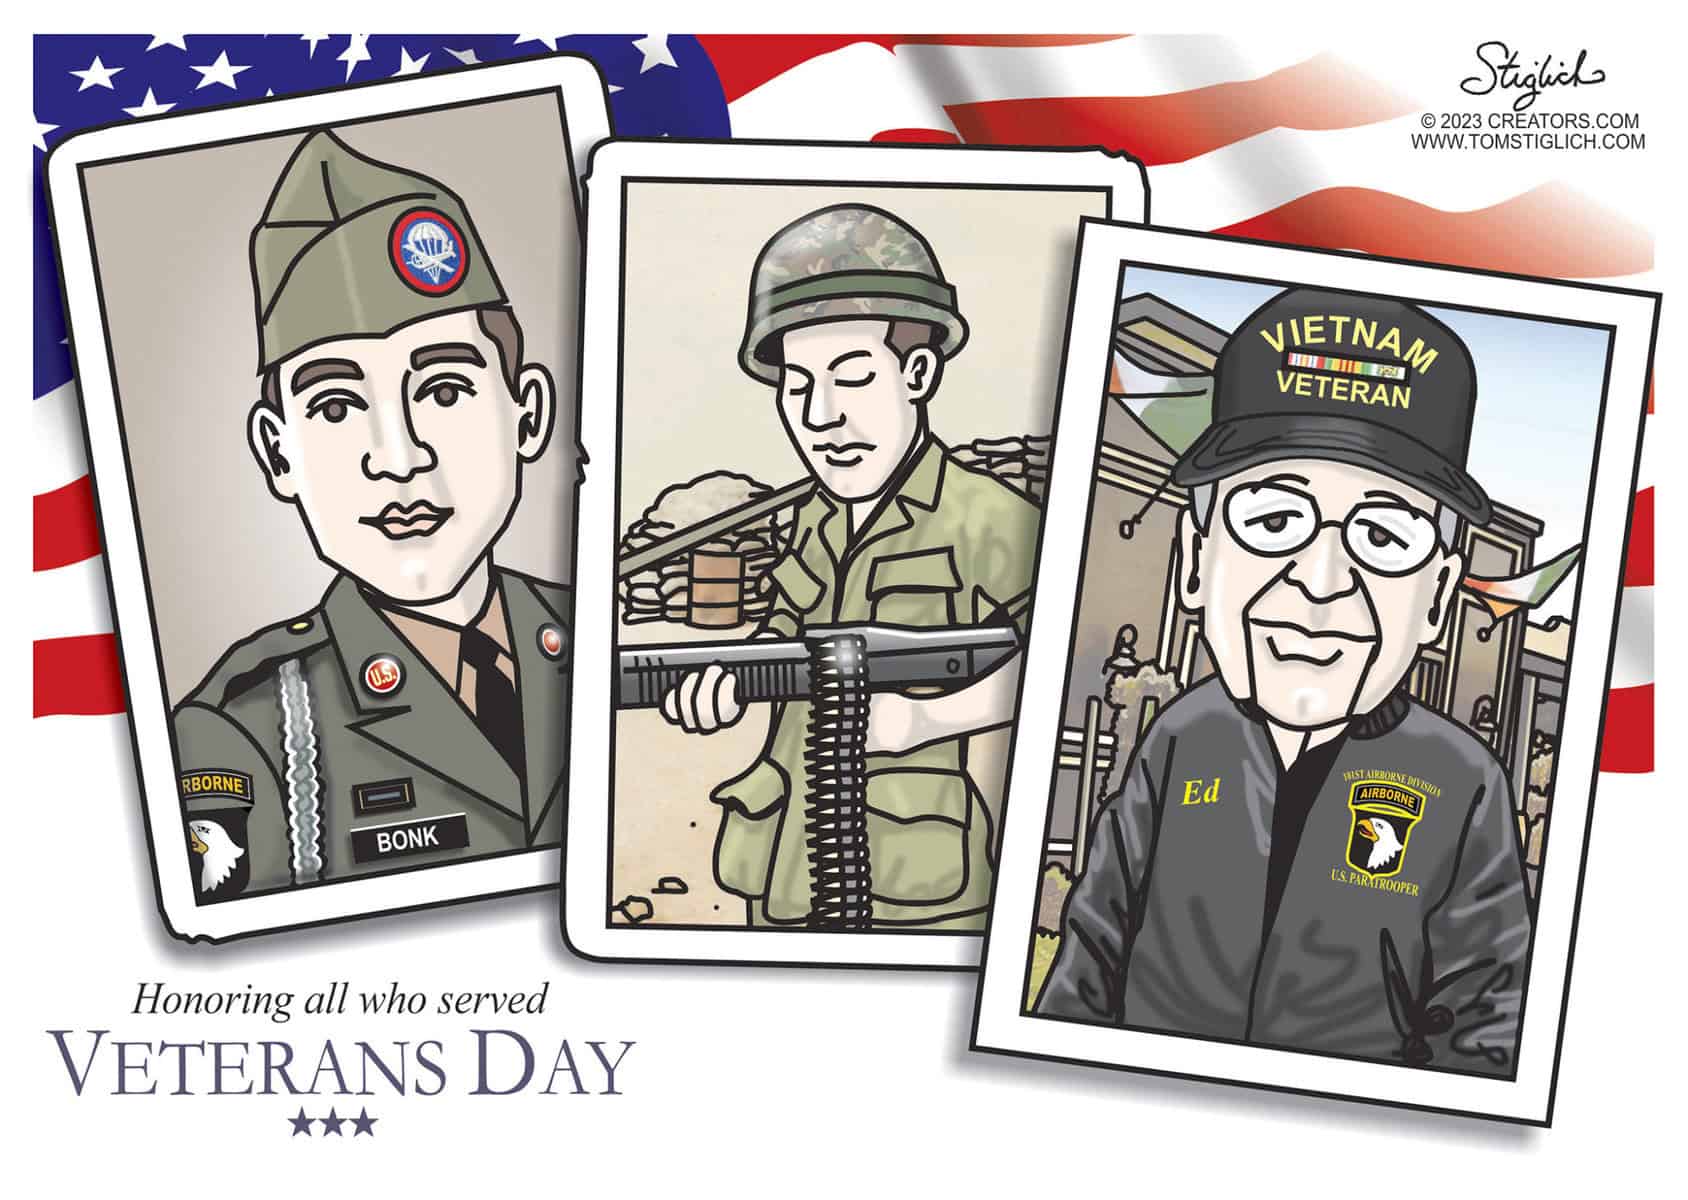 Celebrating Veterans Day